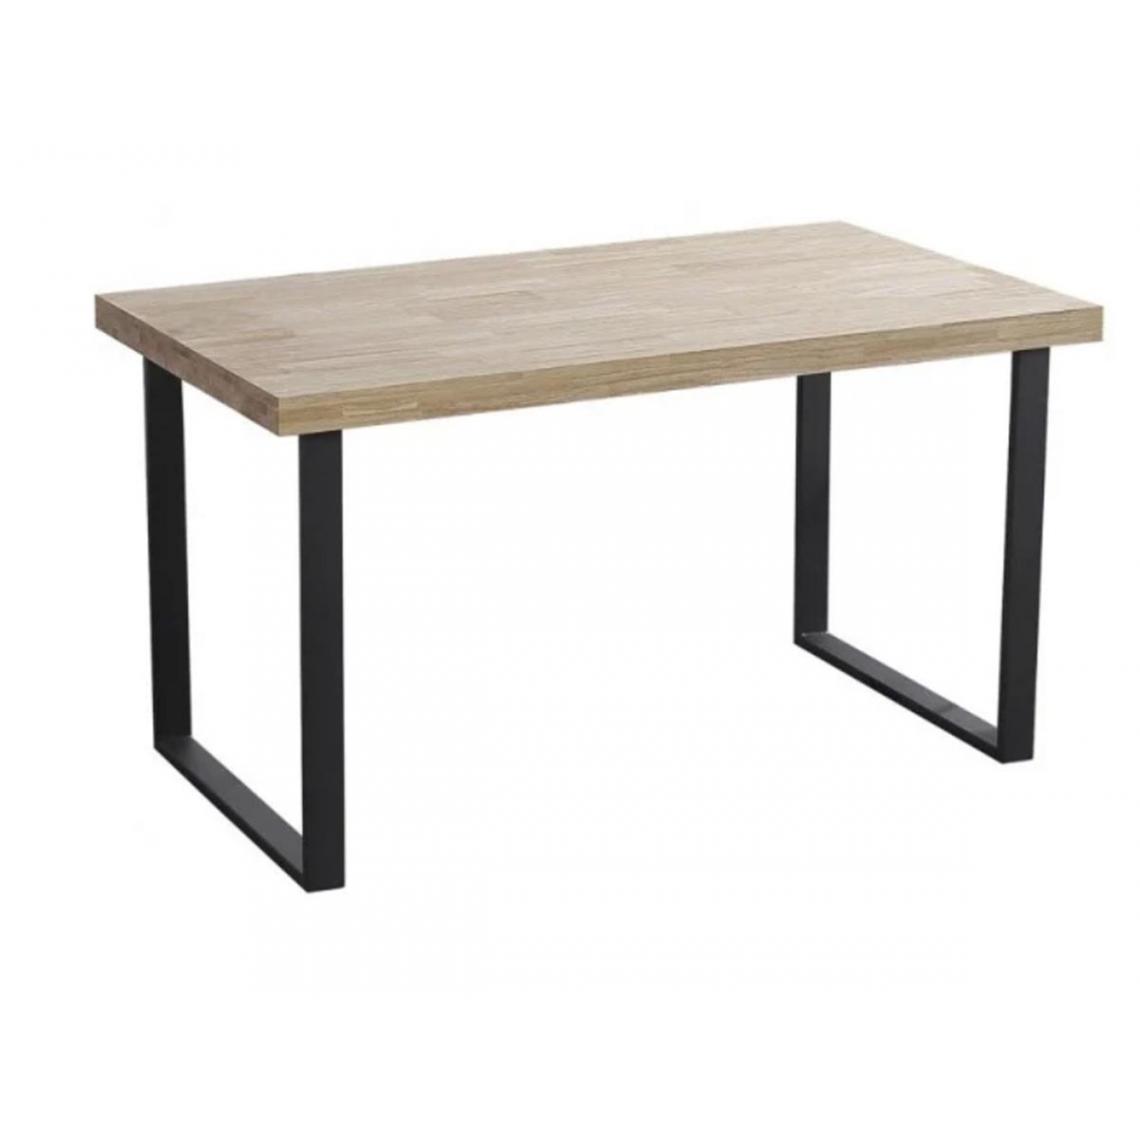 Pegane - Table à manger rectangulaire en bois coloris chêne clair / pieds noir - Longueur 140 x profondeur 80 x hauteur 76 cm - Tables à manger